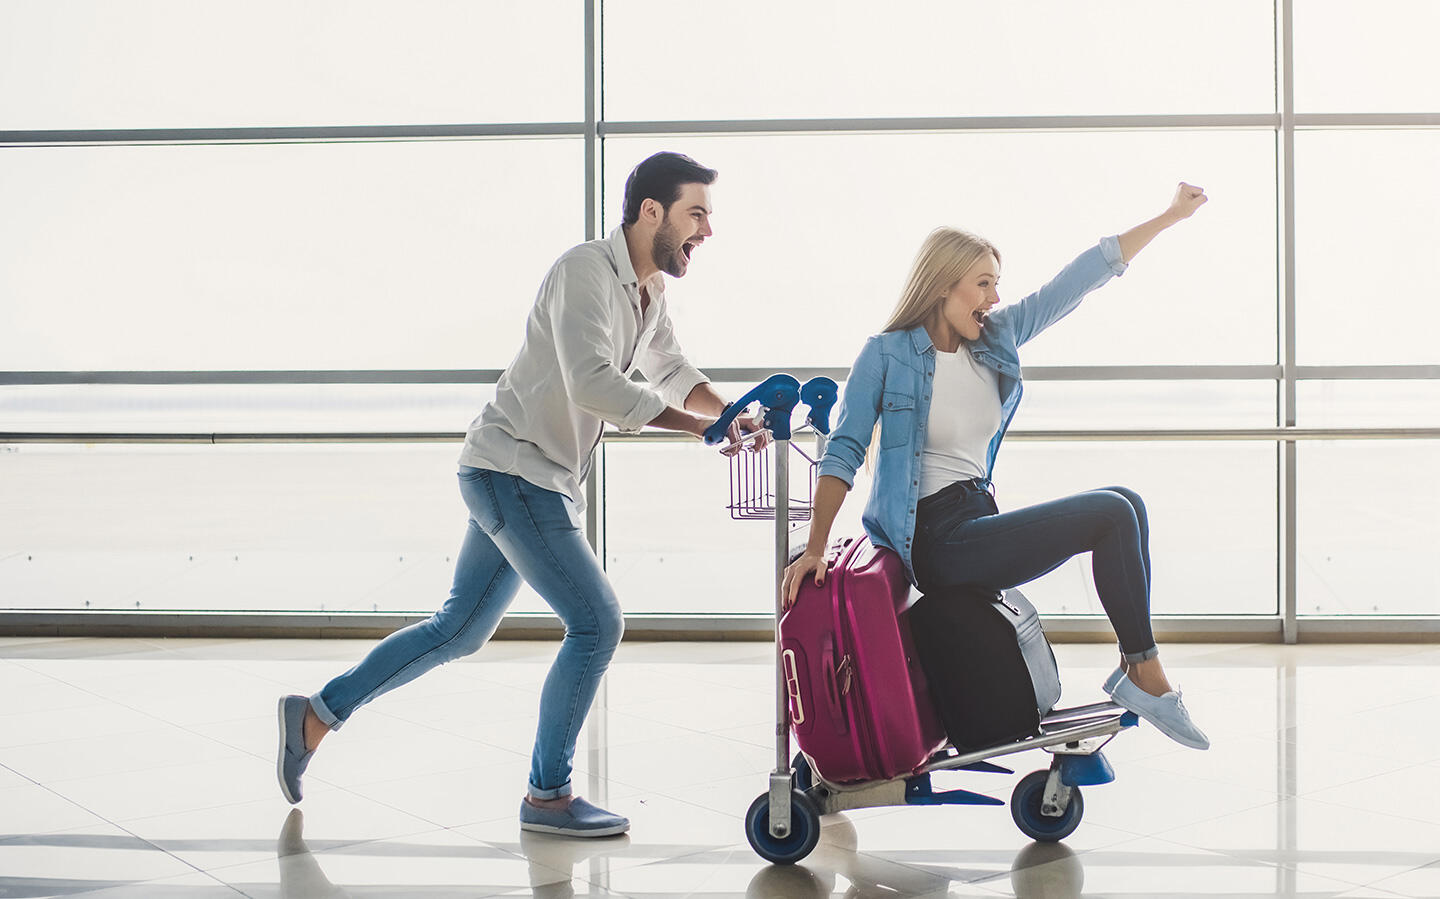 Una pareja feliz se apresura con su equipaje en el aeropuerto de Nantes, un hombre empuja a una mujer sonriente en un carrito de equipaje.